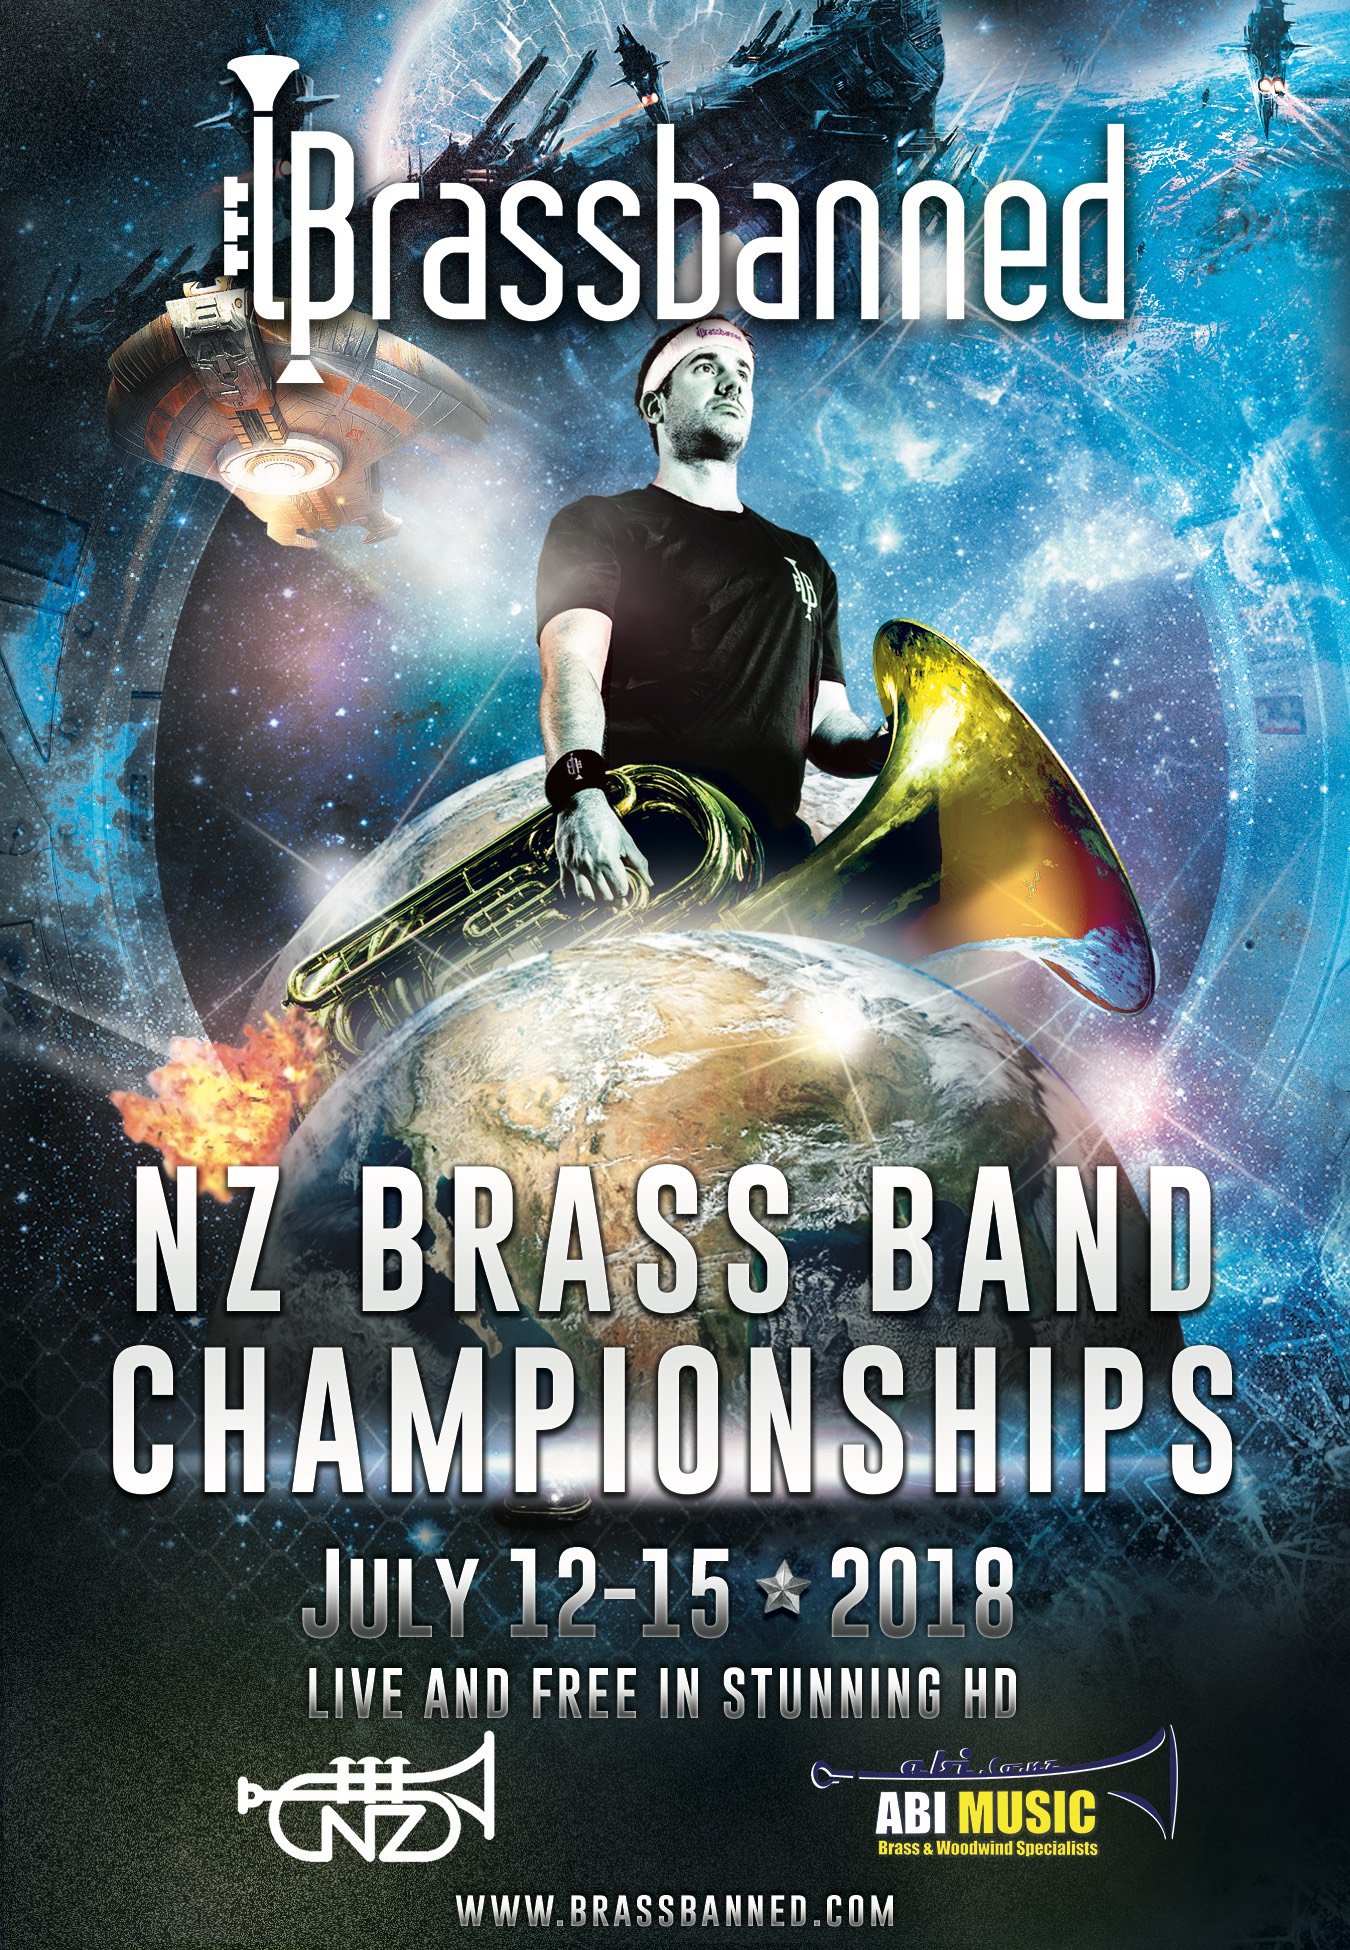 NZ Brassbanned Live Stream 2018